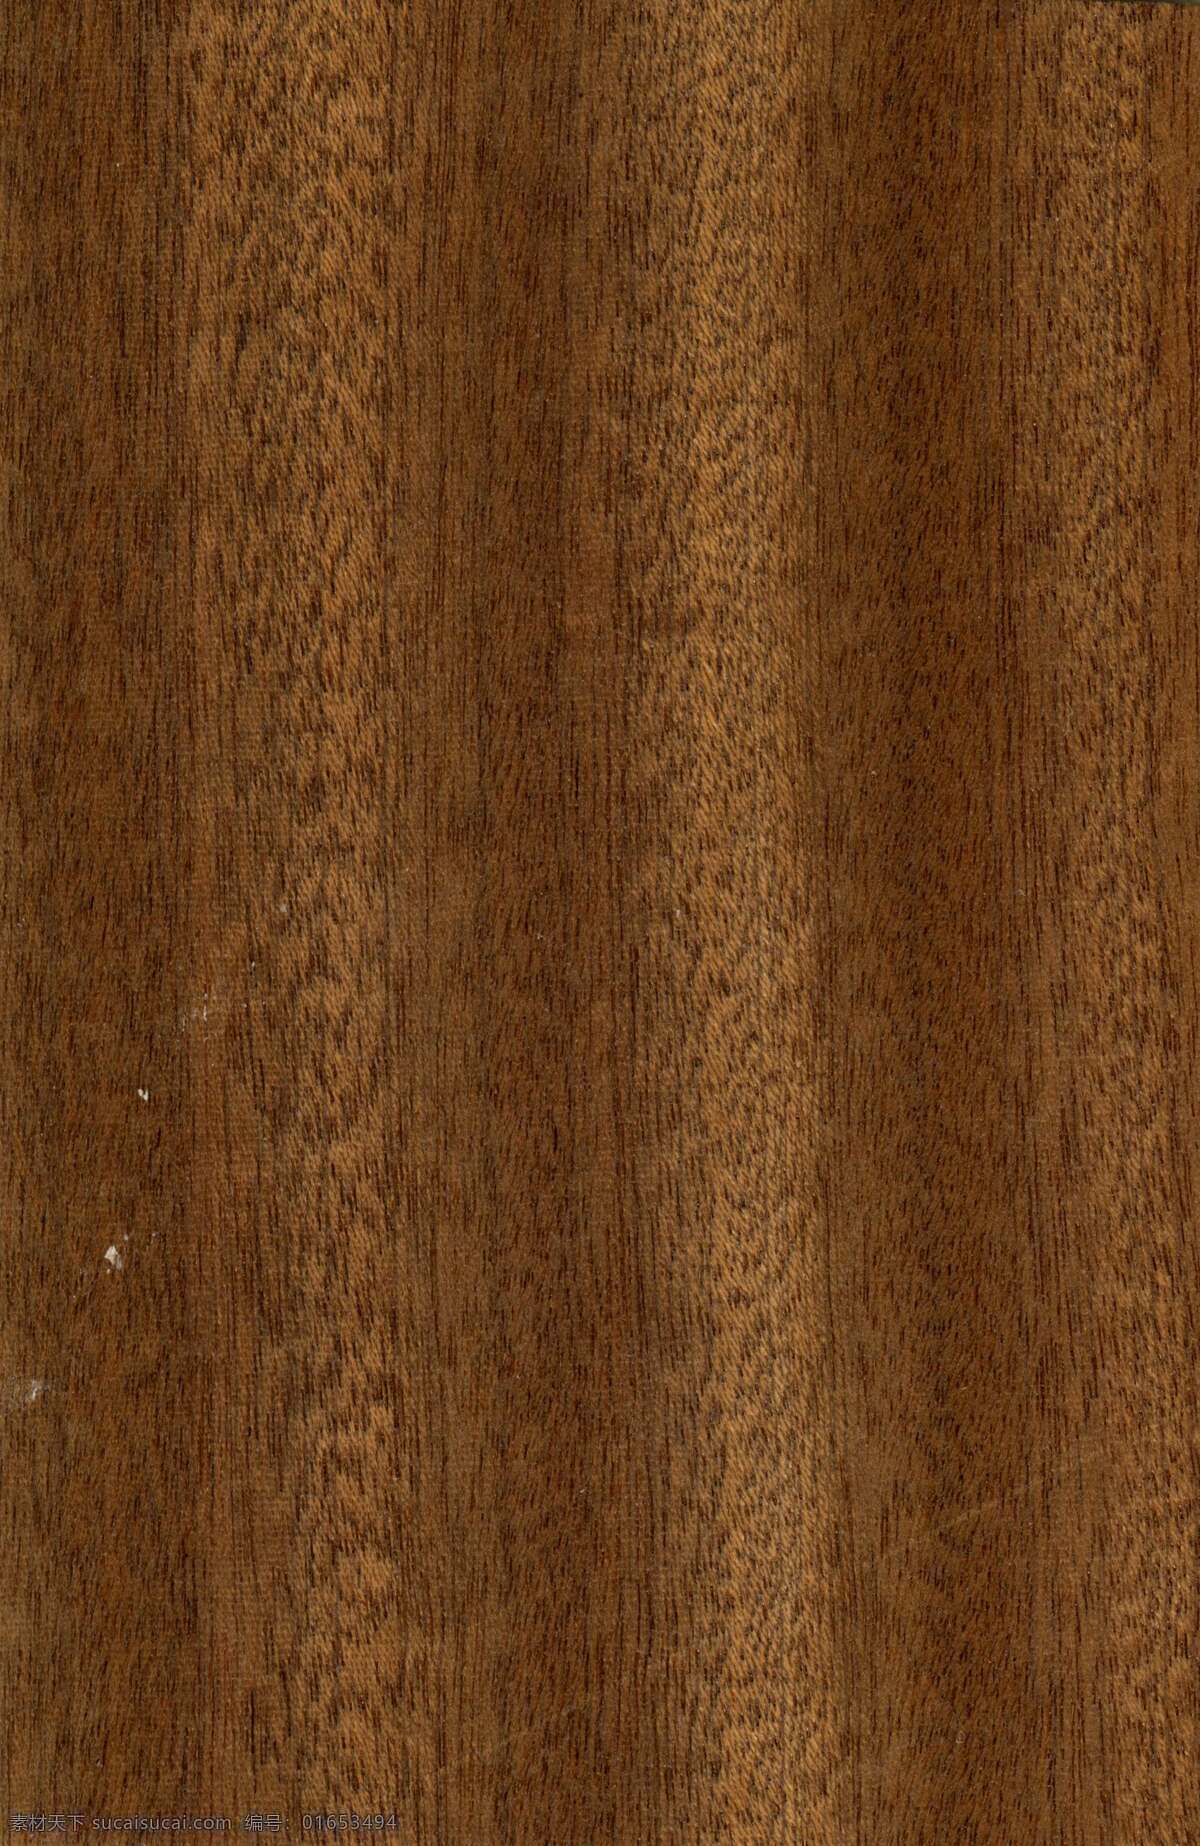 常用 木 竖 纹理 榉木 材质 贴图 家园 木类 榉木面板 原木色 木纹 高清 地板 榉木贴图图片 maya 红 榉 叁 面板